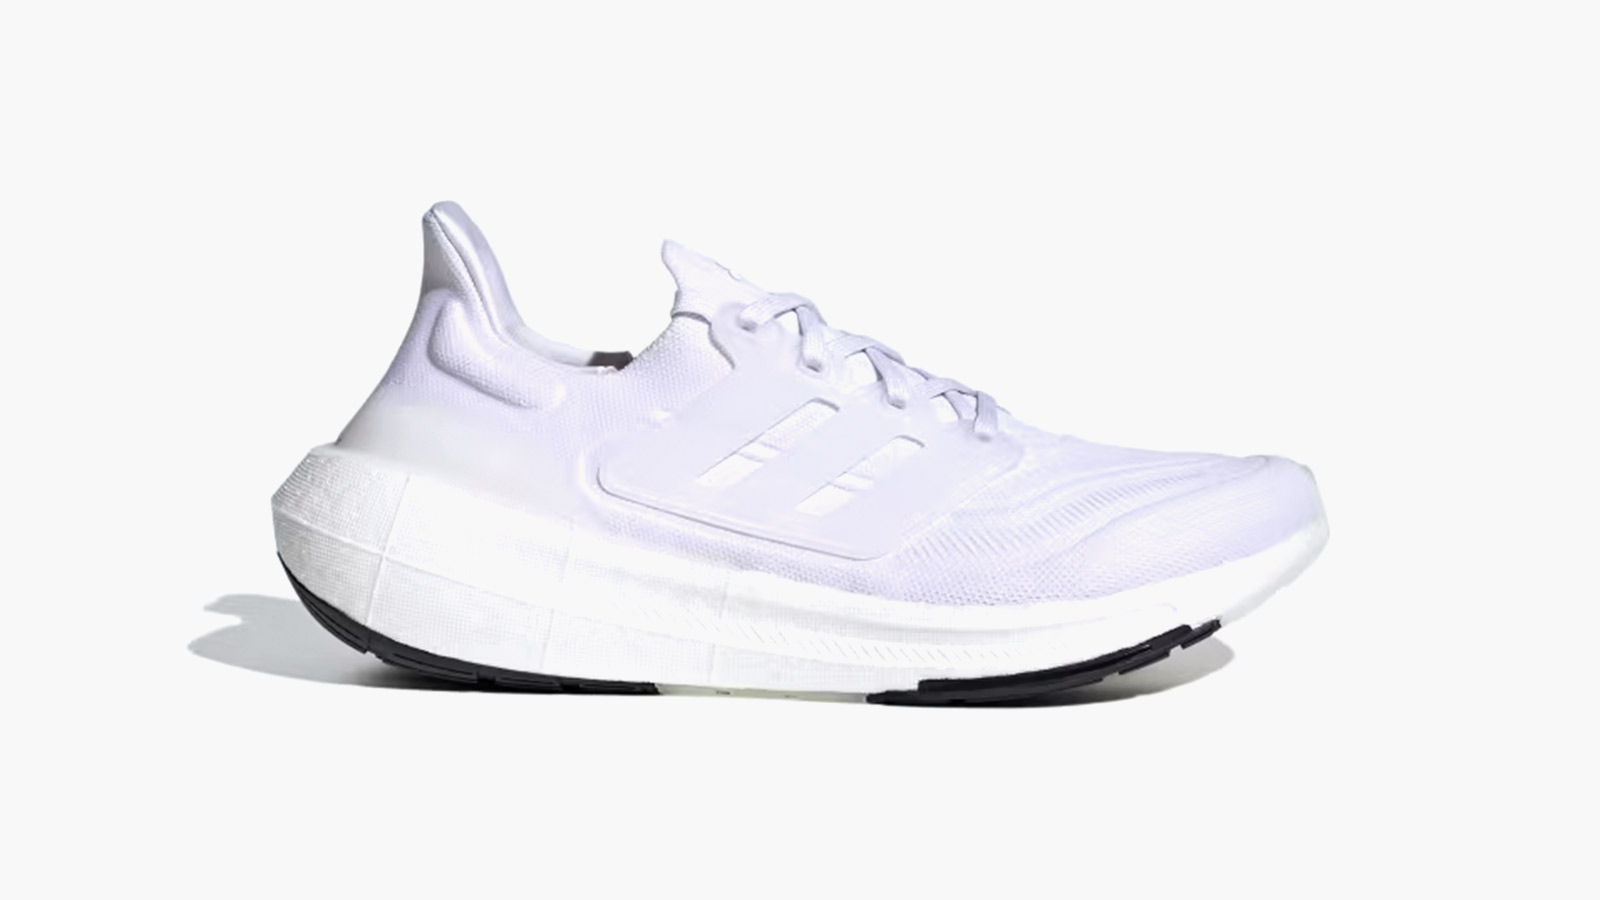 an all white men's running shoe